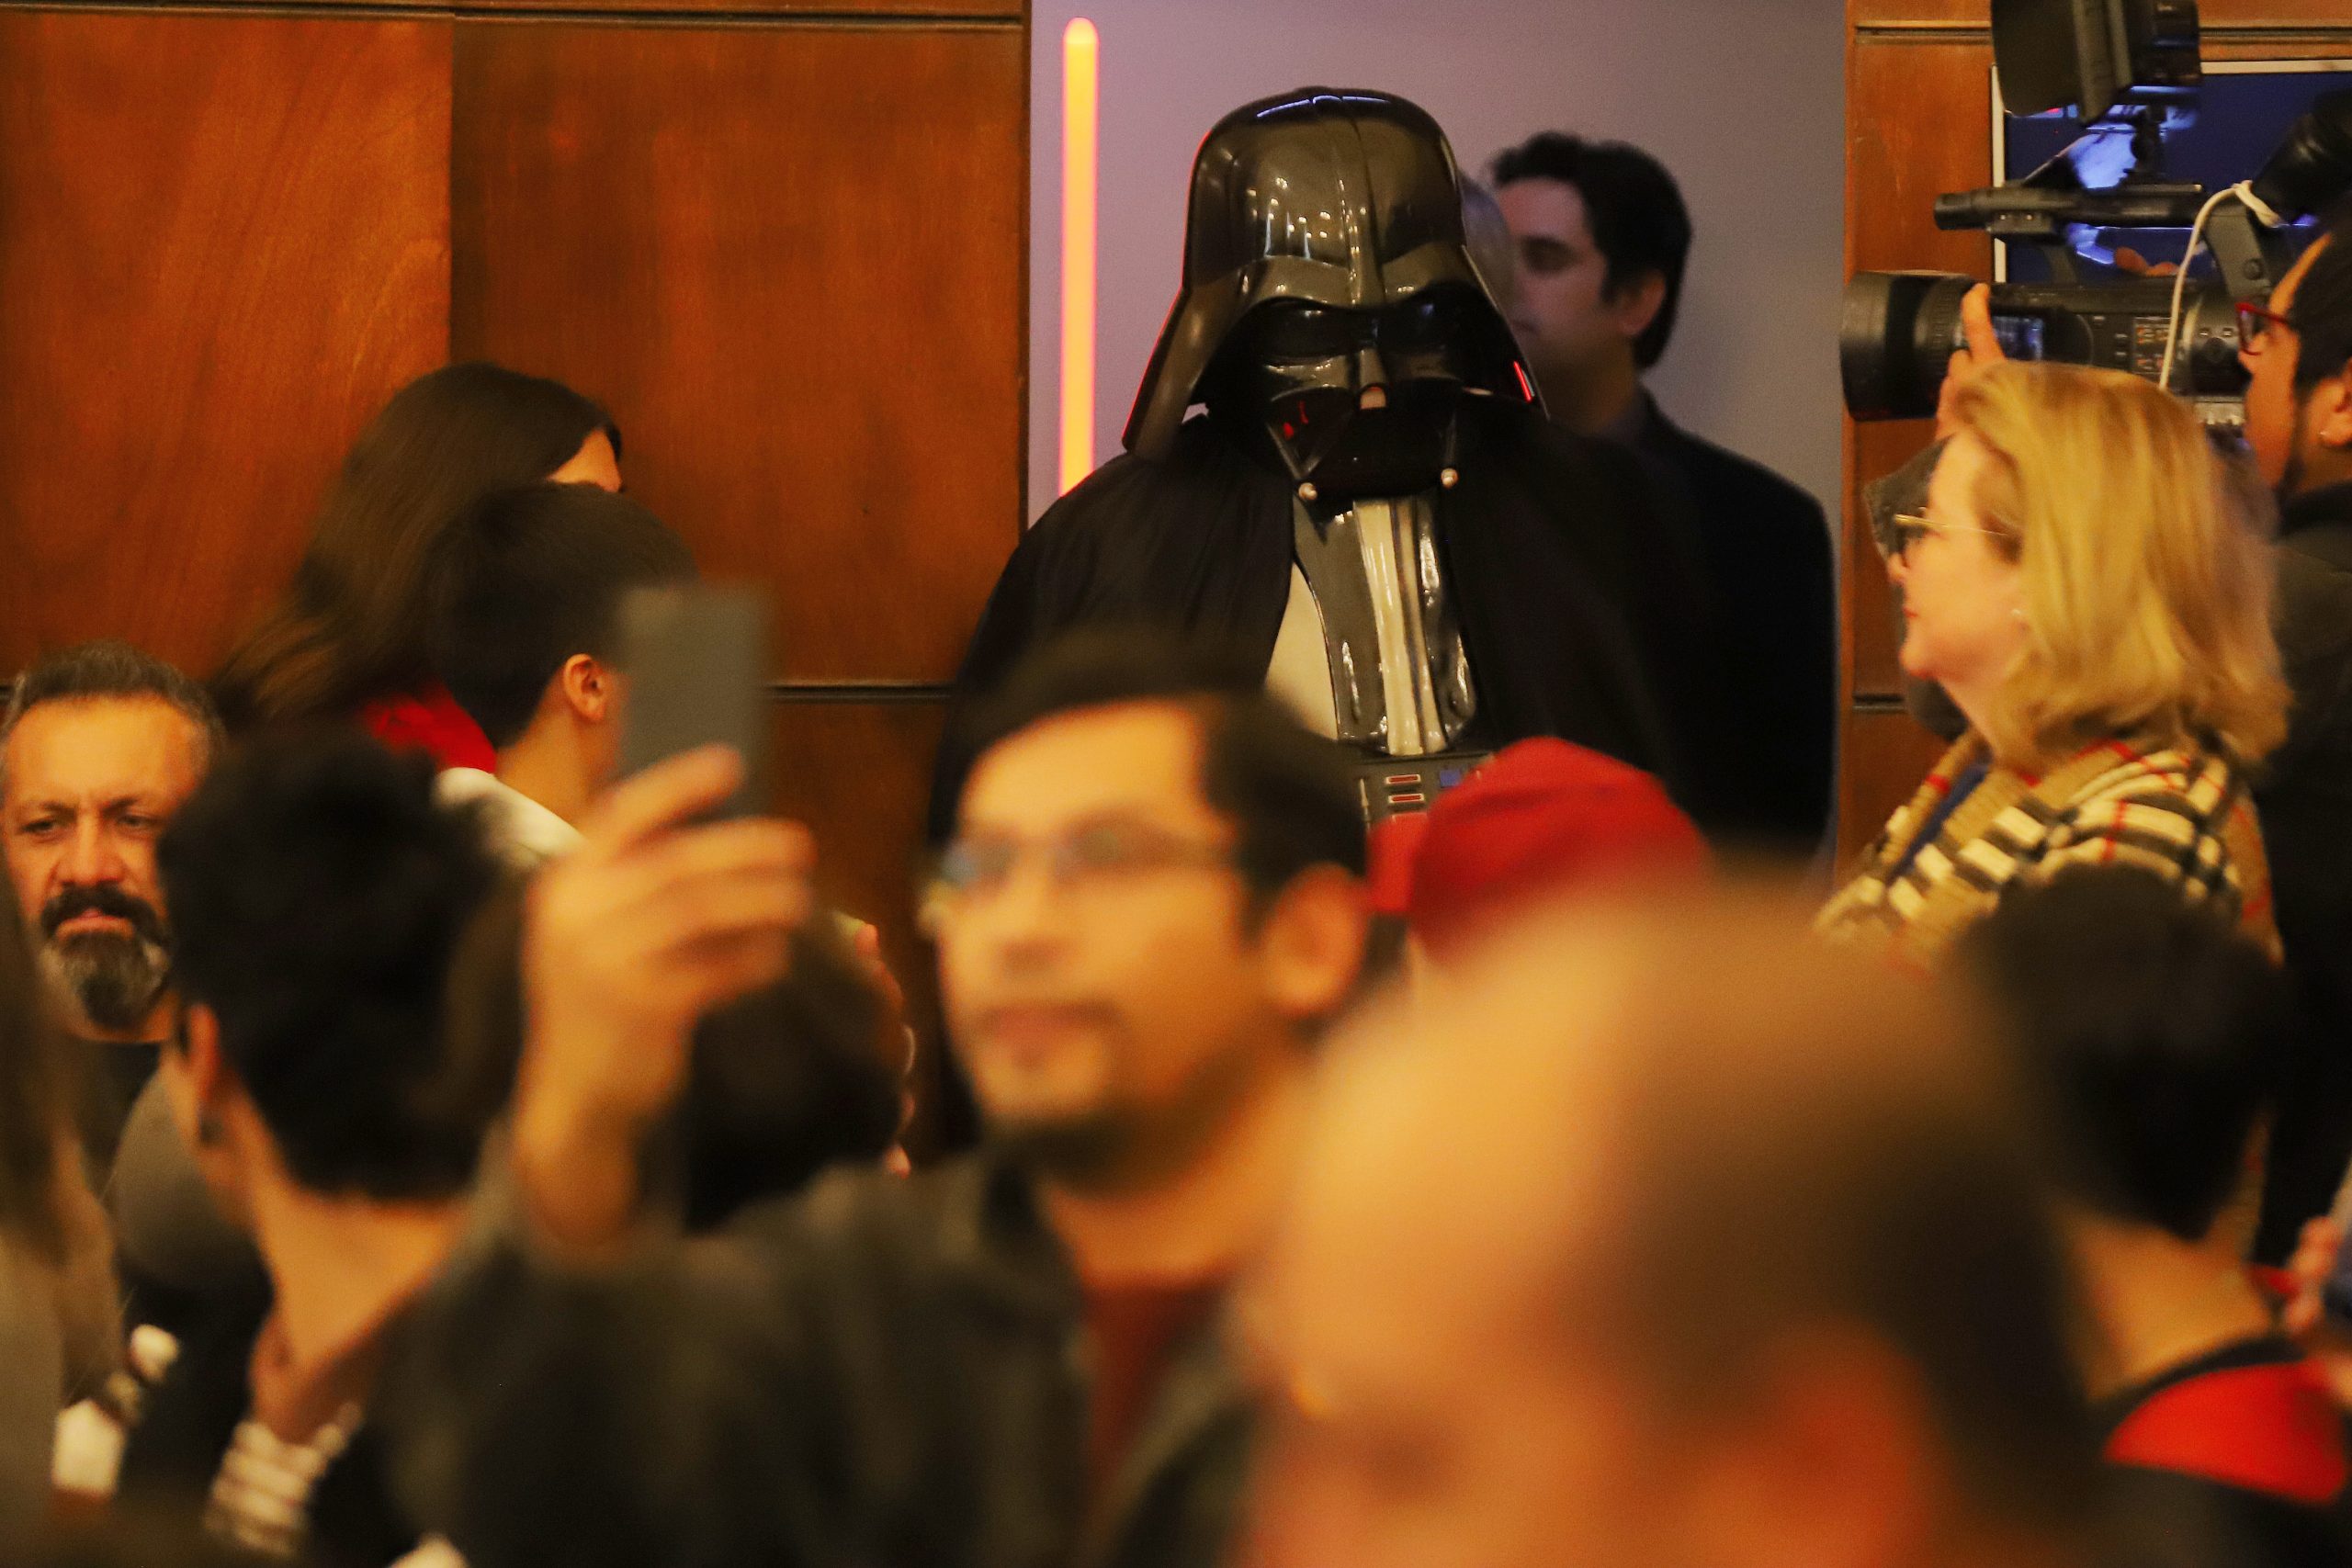 Juicio Oral a Darth Vader. FOTO: MANUEL LEMA OLGUIN/AGENCIAUNO